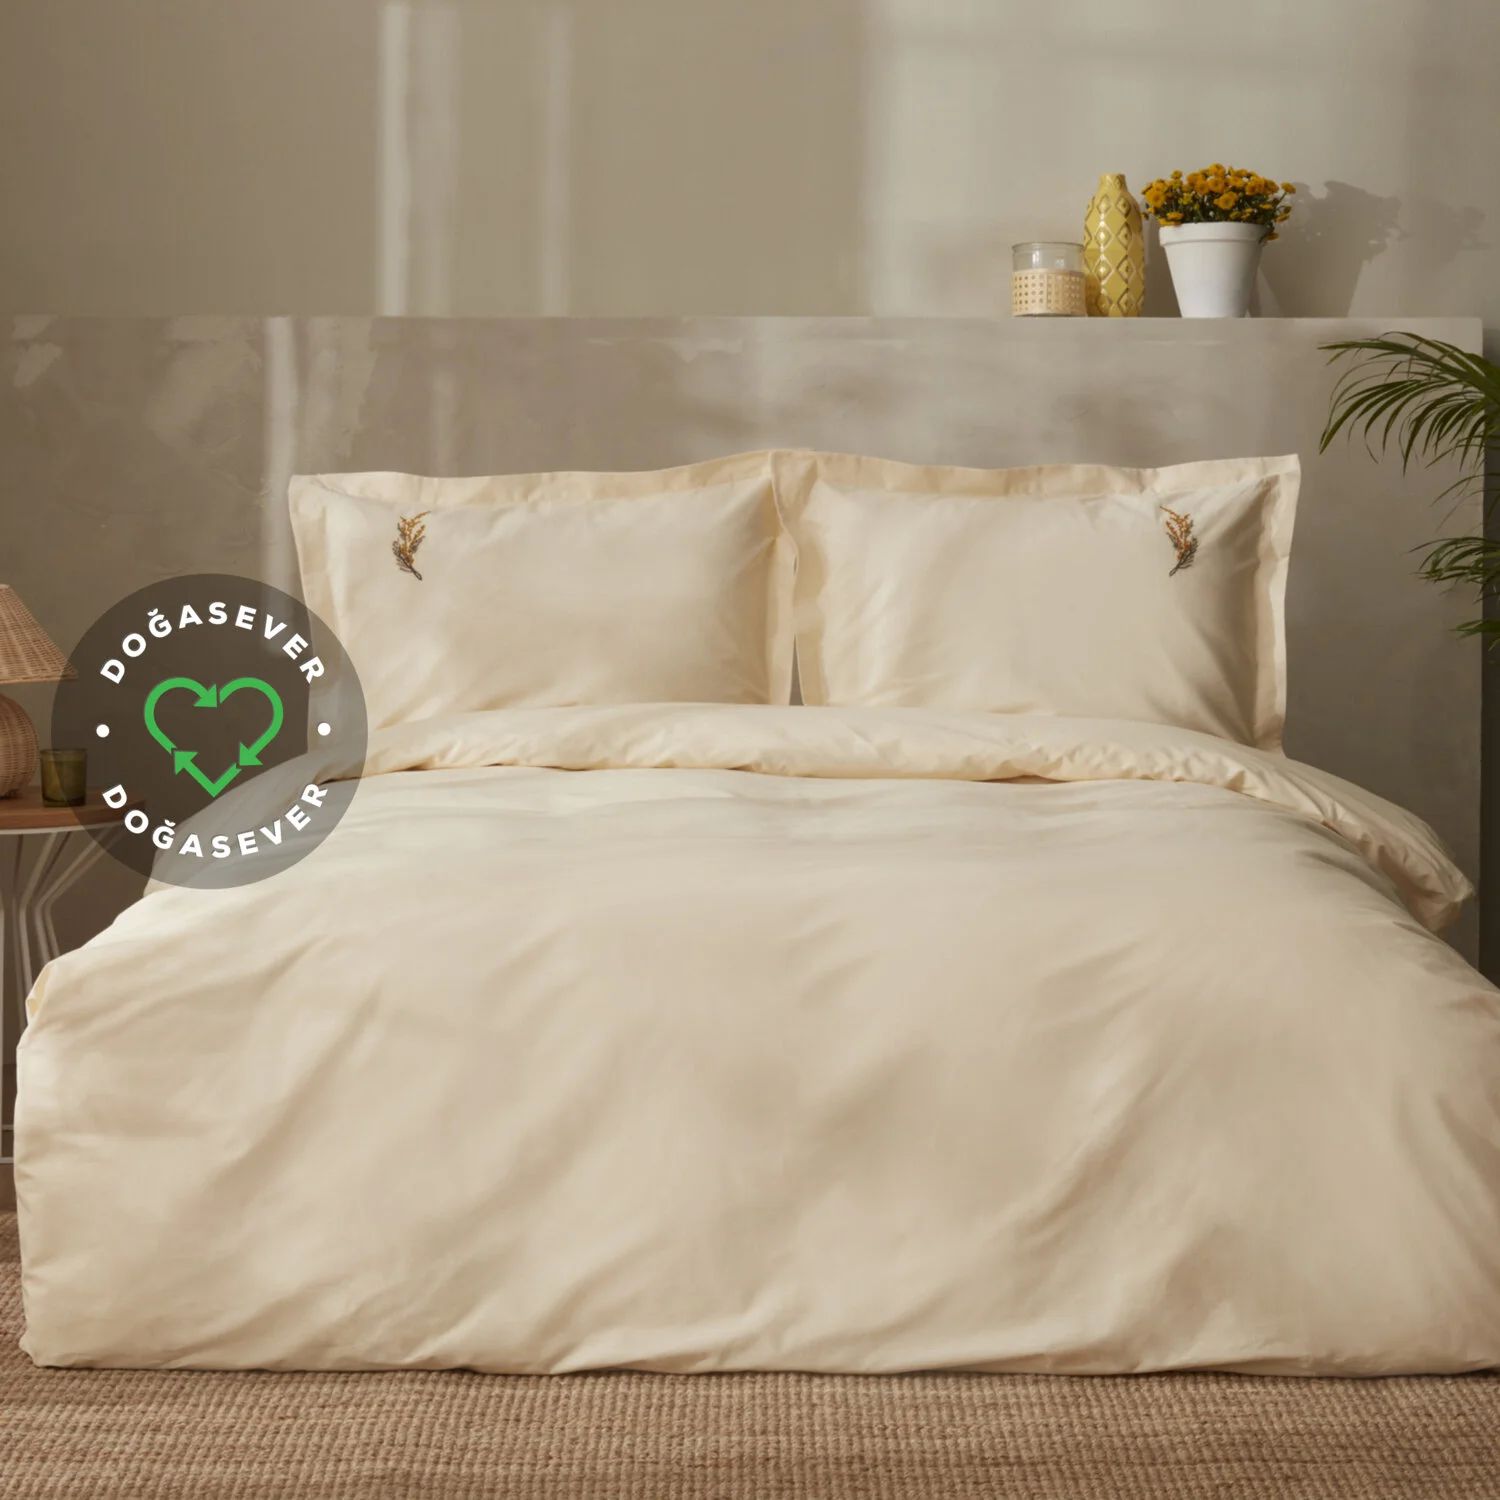 karaca home комплект постельного белья цвета хаки окрашенный в двойной пряже vetro khaki Комплект постельного белья Karaca Home Olive Vegan, цвет хаки